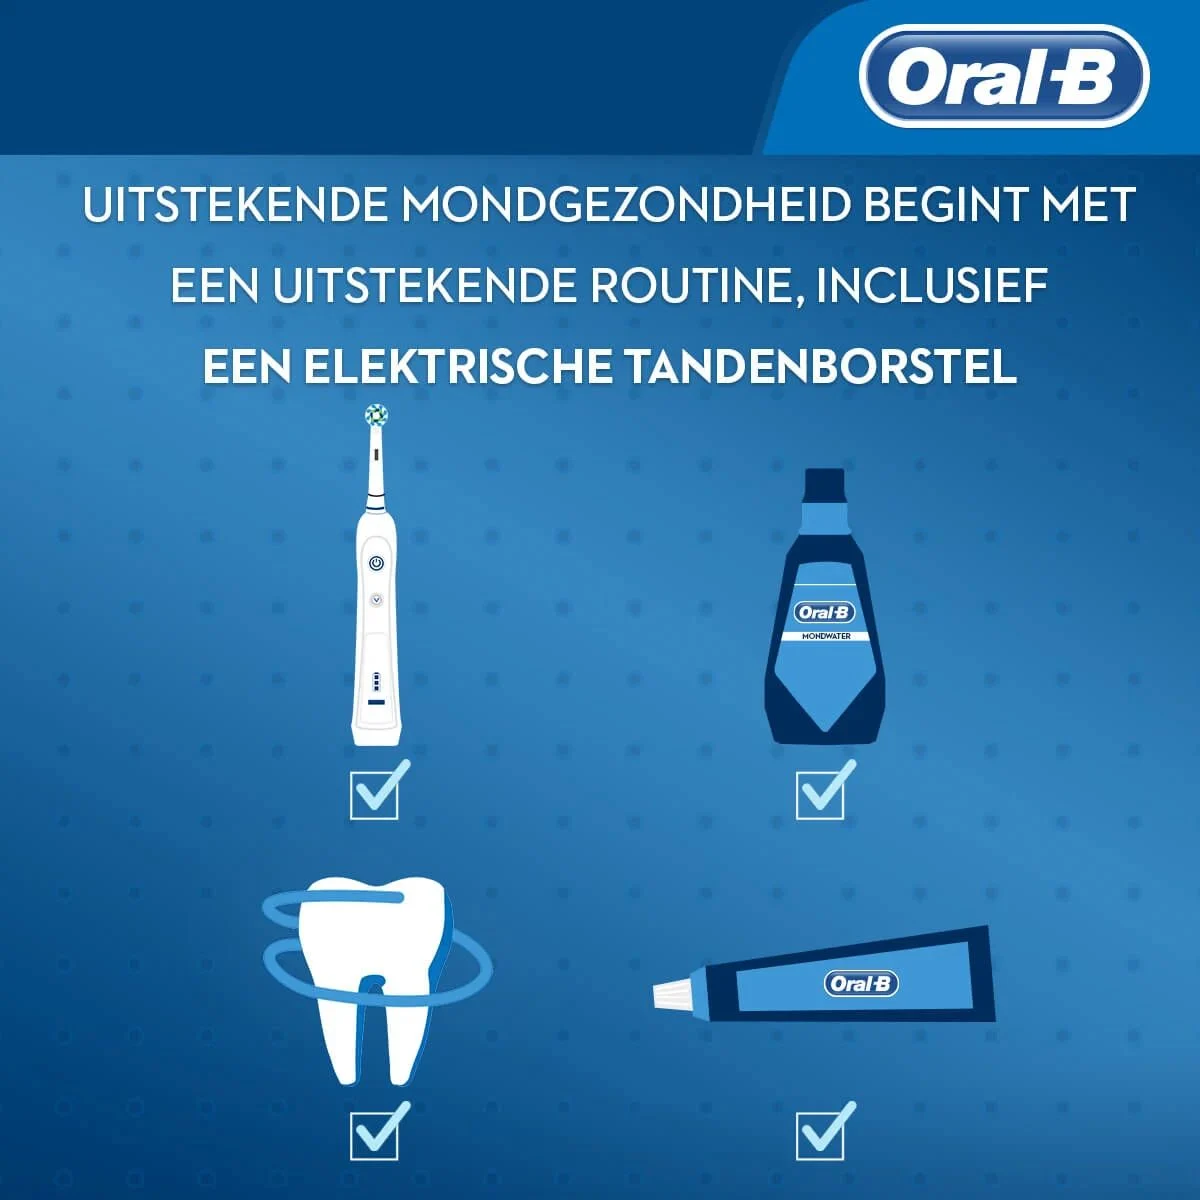 Zaken om te overwegen als je een elektrische tandenborstel koopt article banner